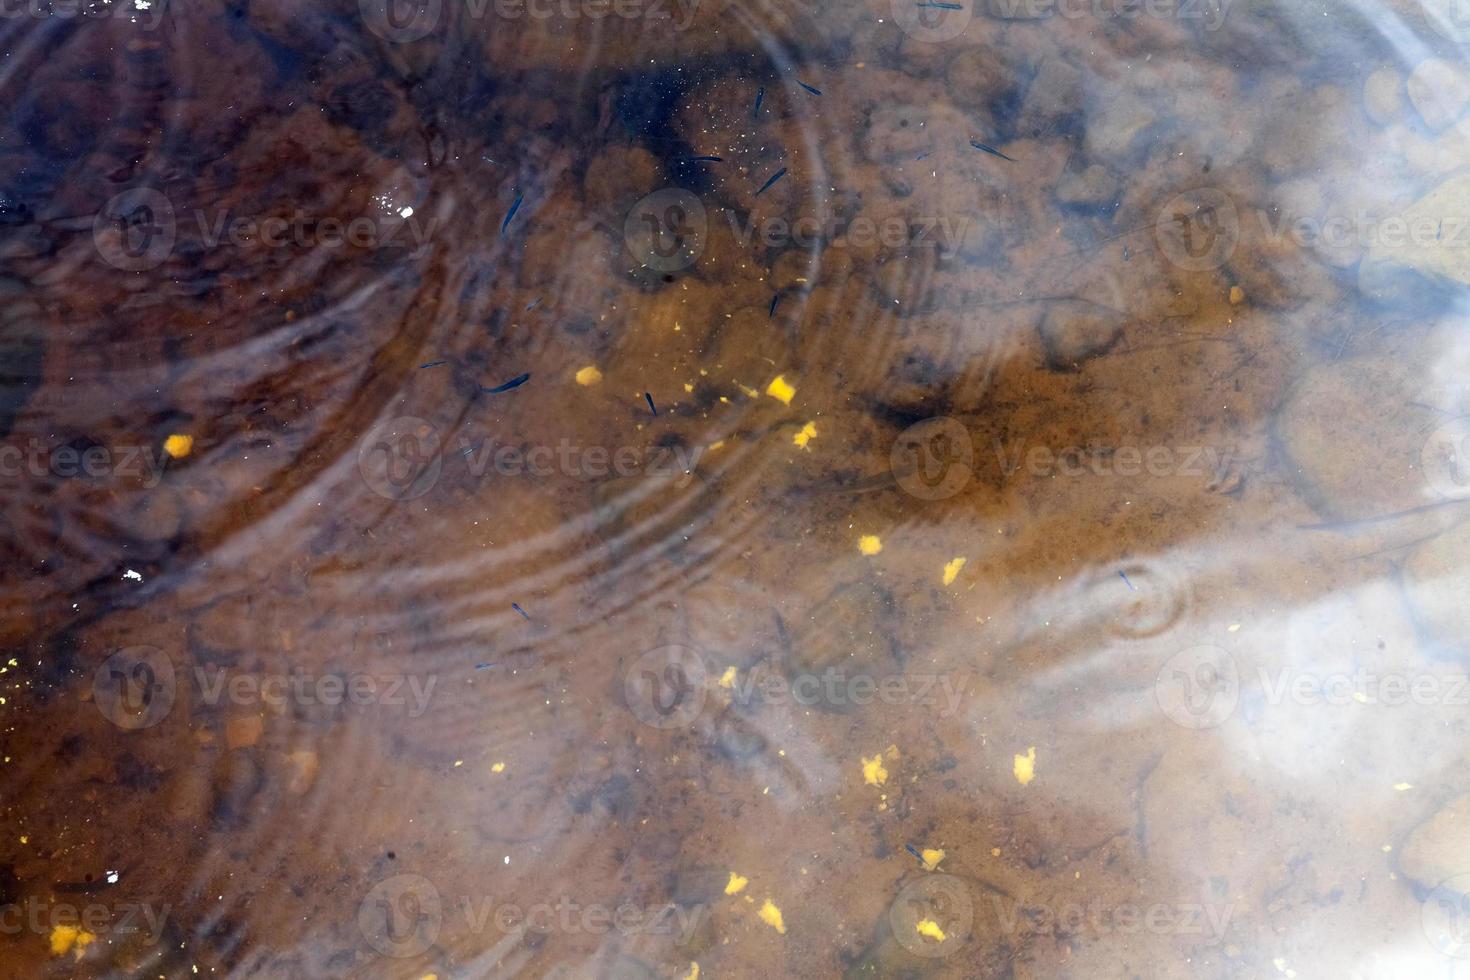 pequeños peces nadando en agua sucia fangosa en el lago foto